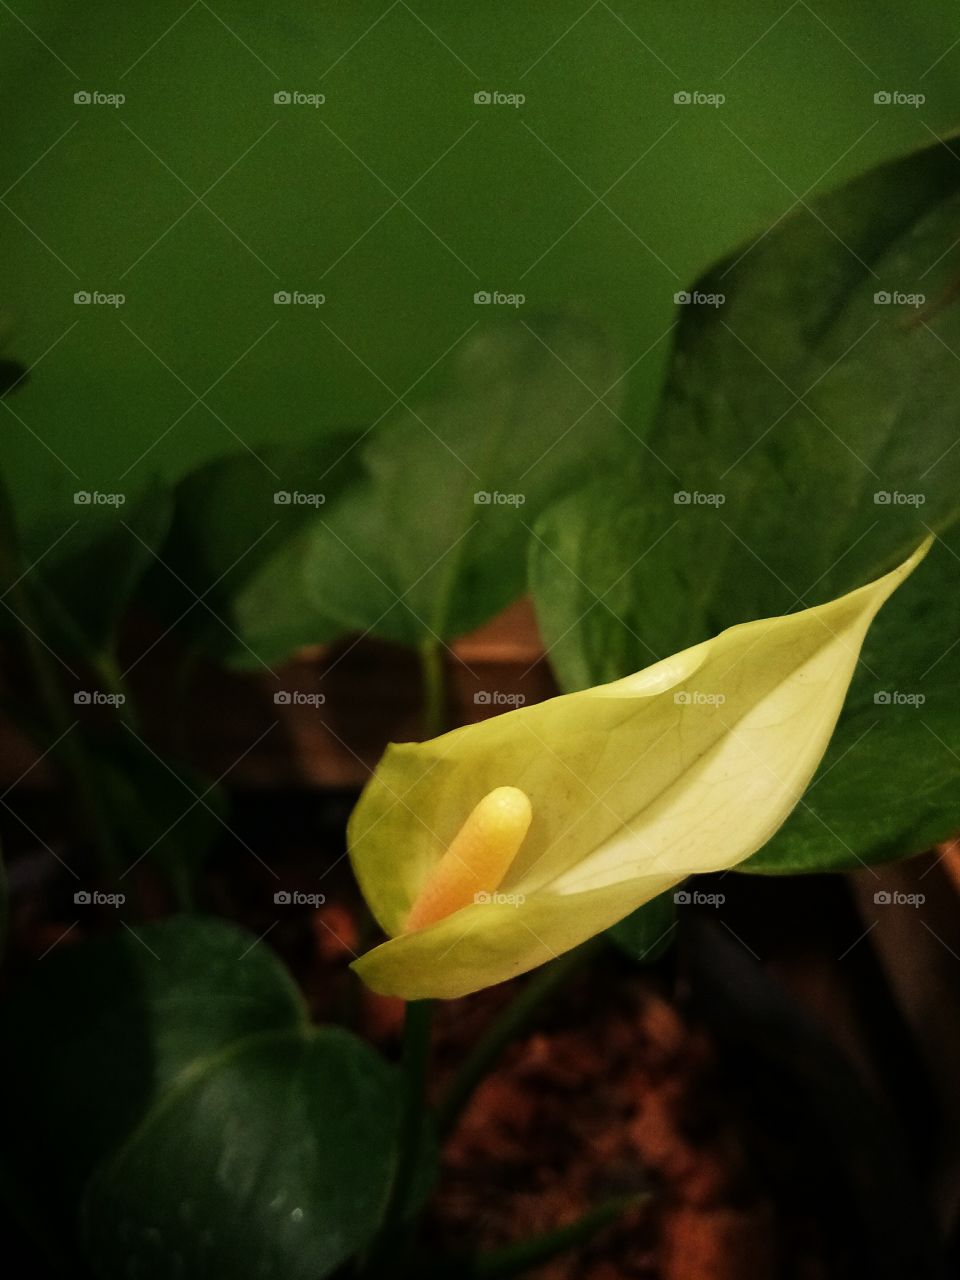 anthurium
flower